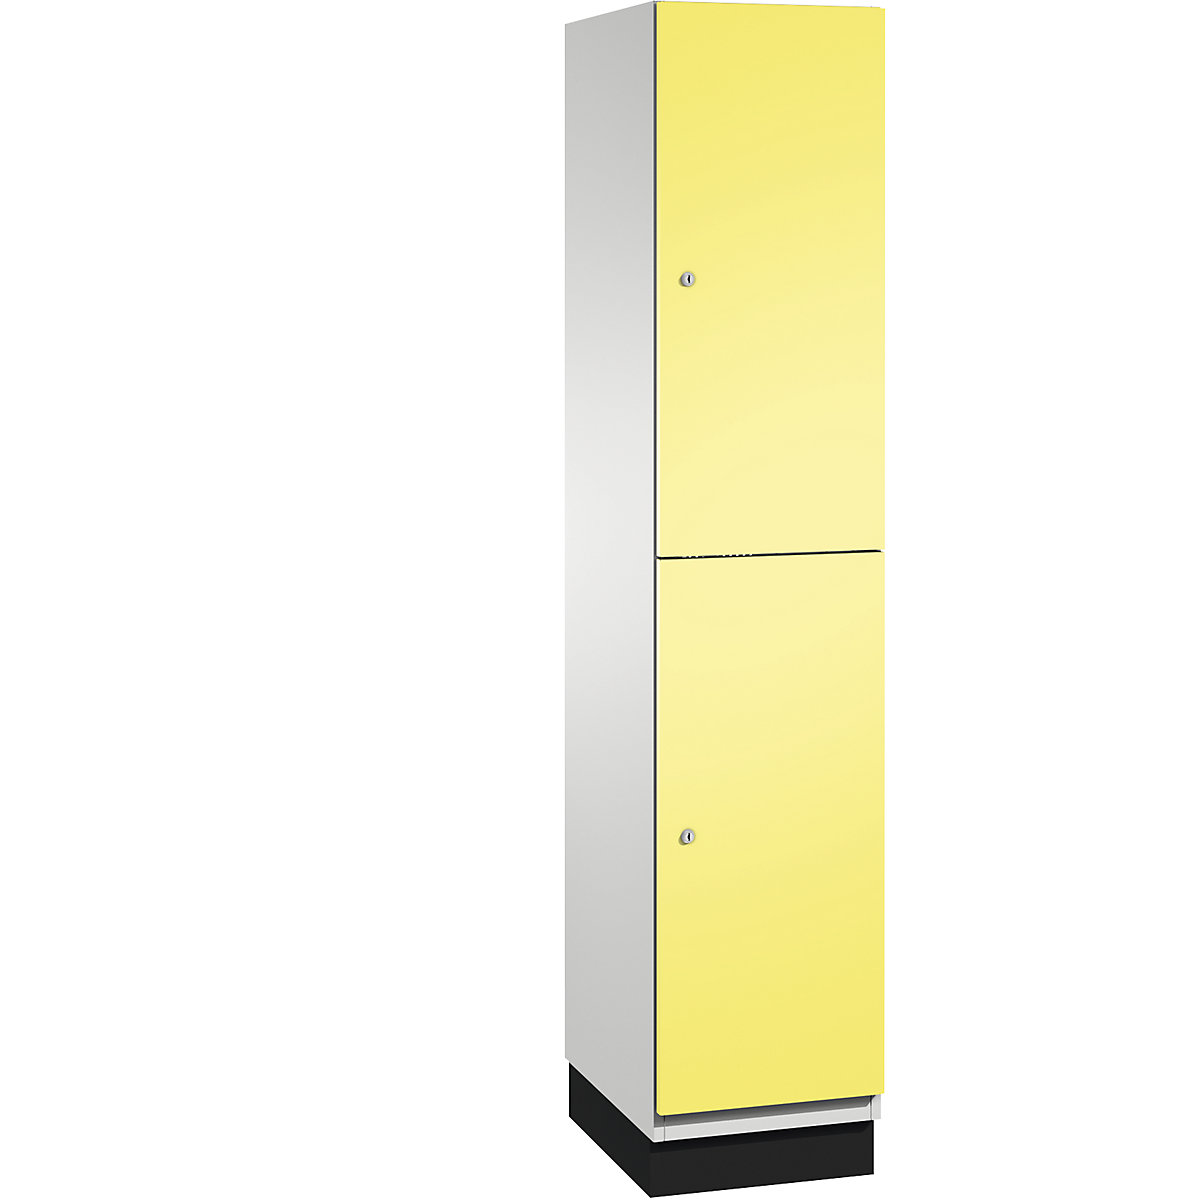 C+P – Skříň s boxy CAMBIO s tyčí na oděvy, 2 boxy, korpus světlý šedý / dveře sírové žluté, šířka 400 mm